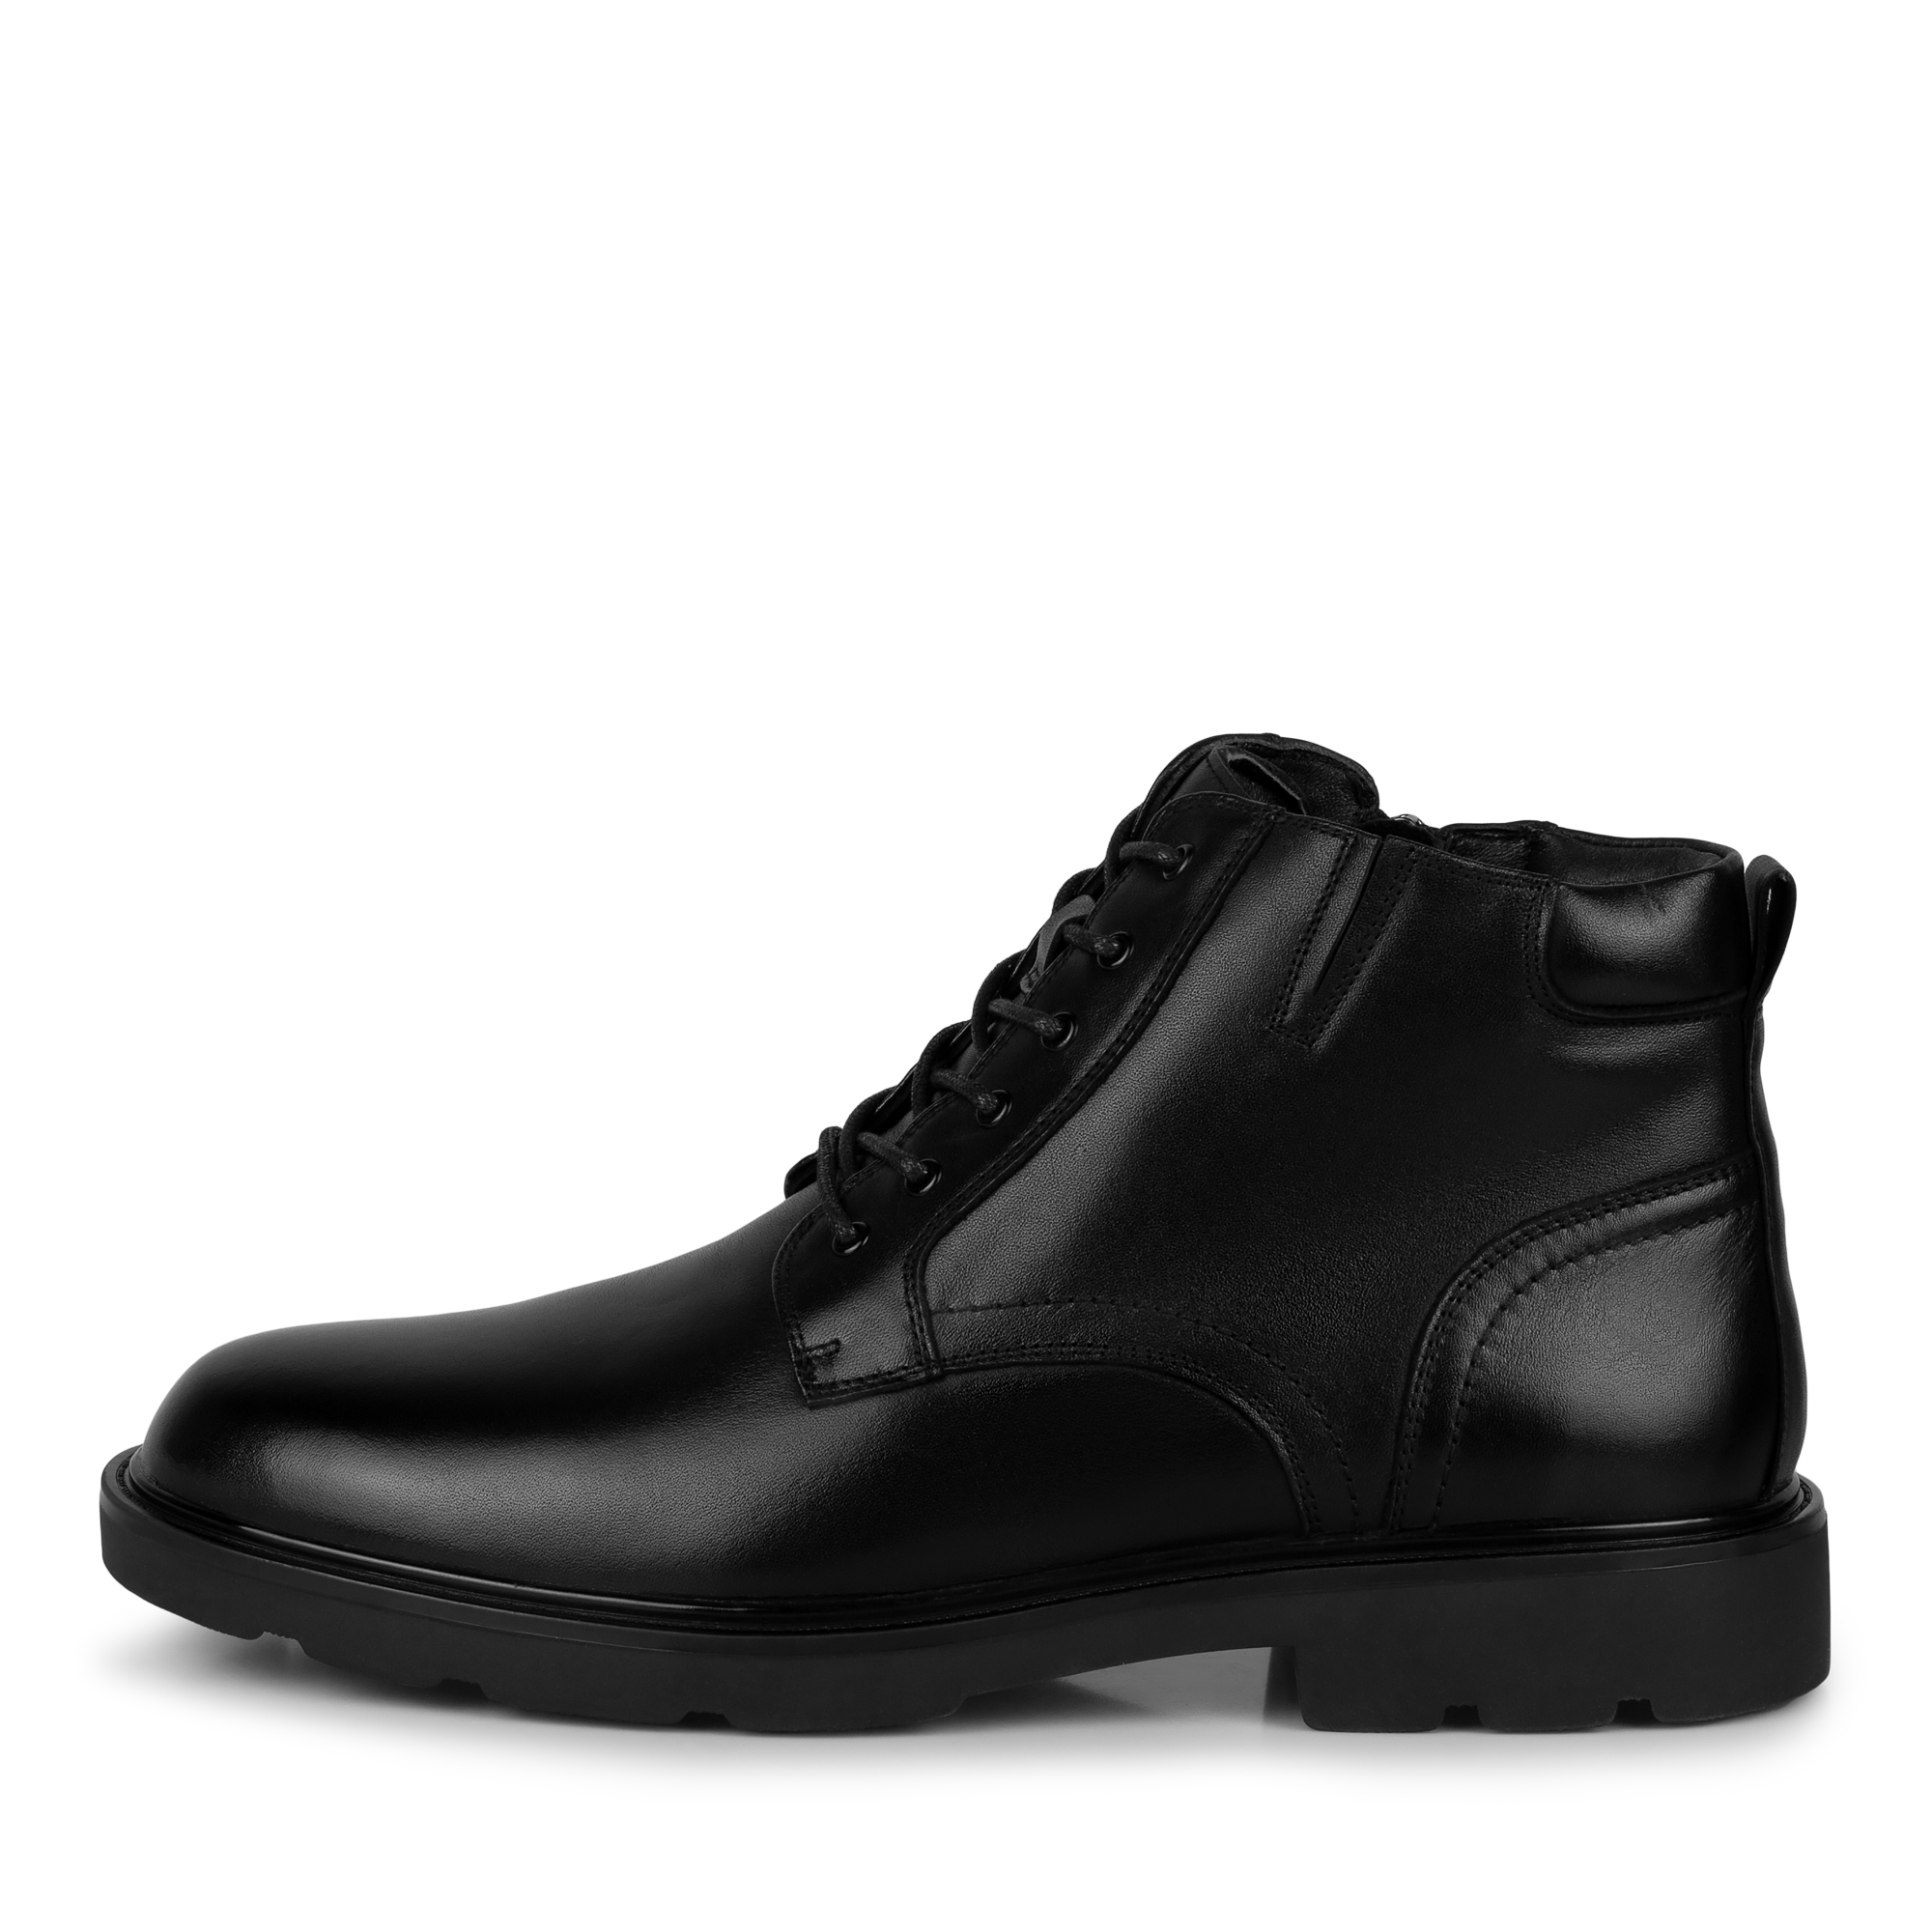 Ботинки Thomas Munz 104-3407C-5102, цвет черный, размер 42